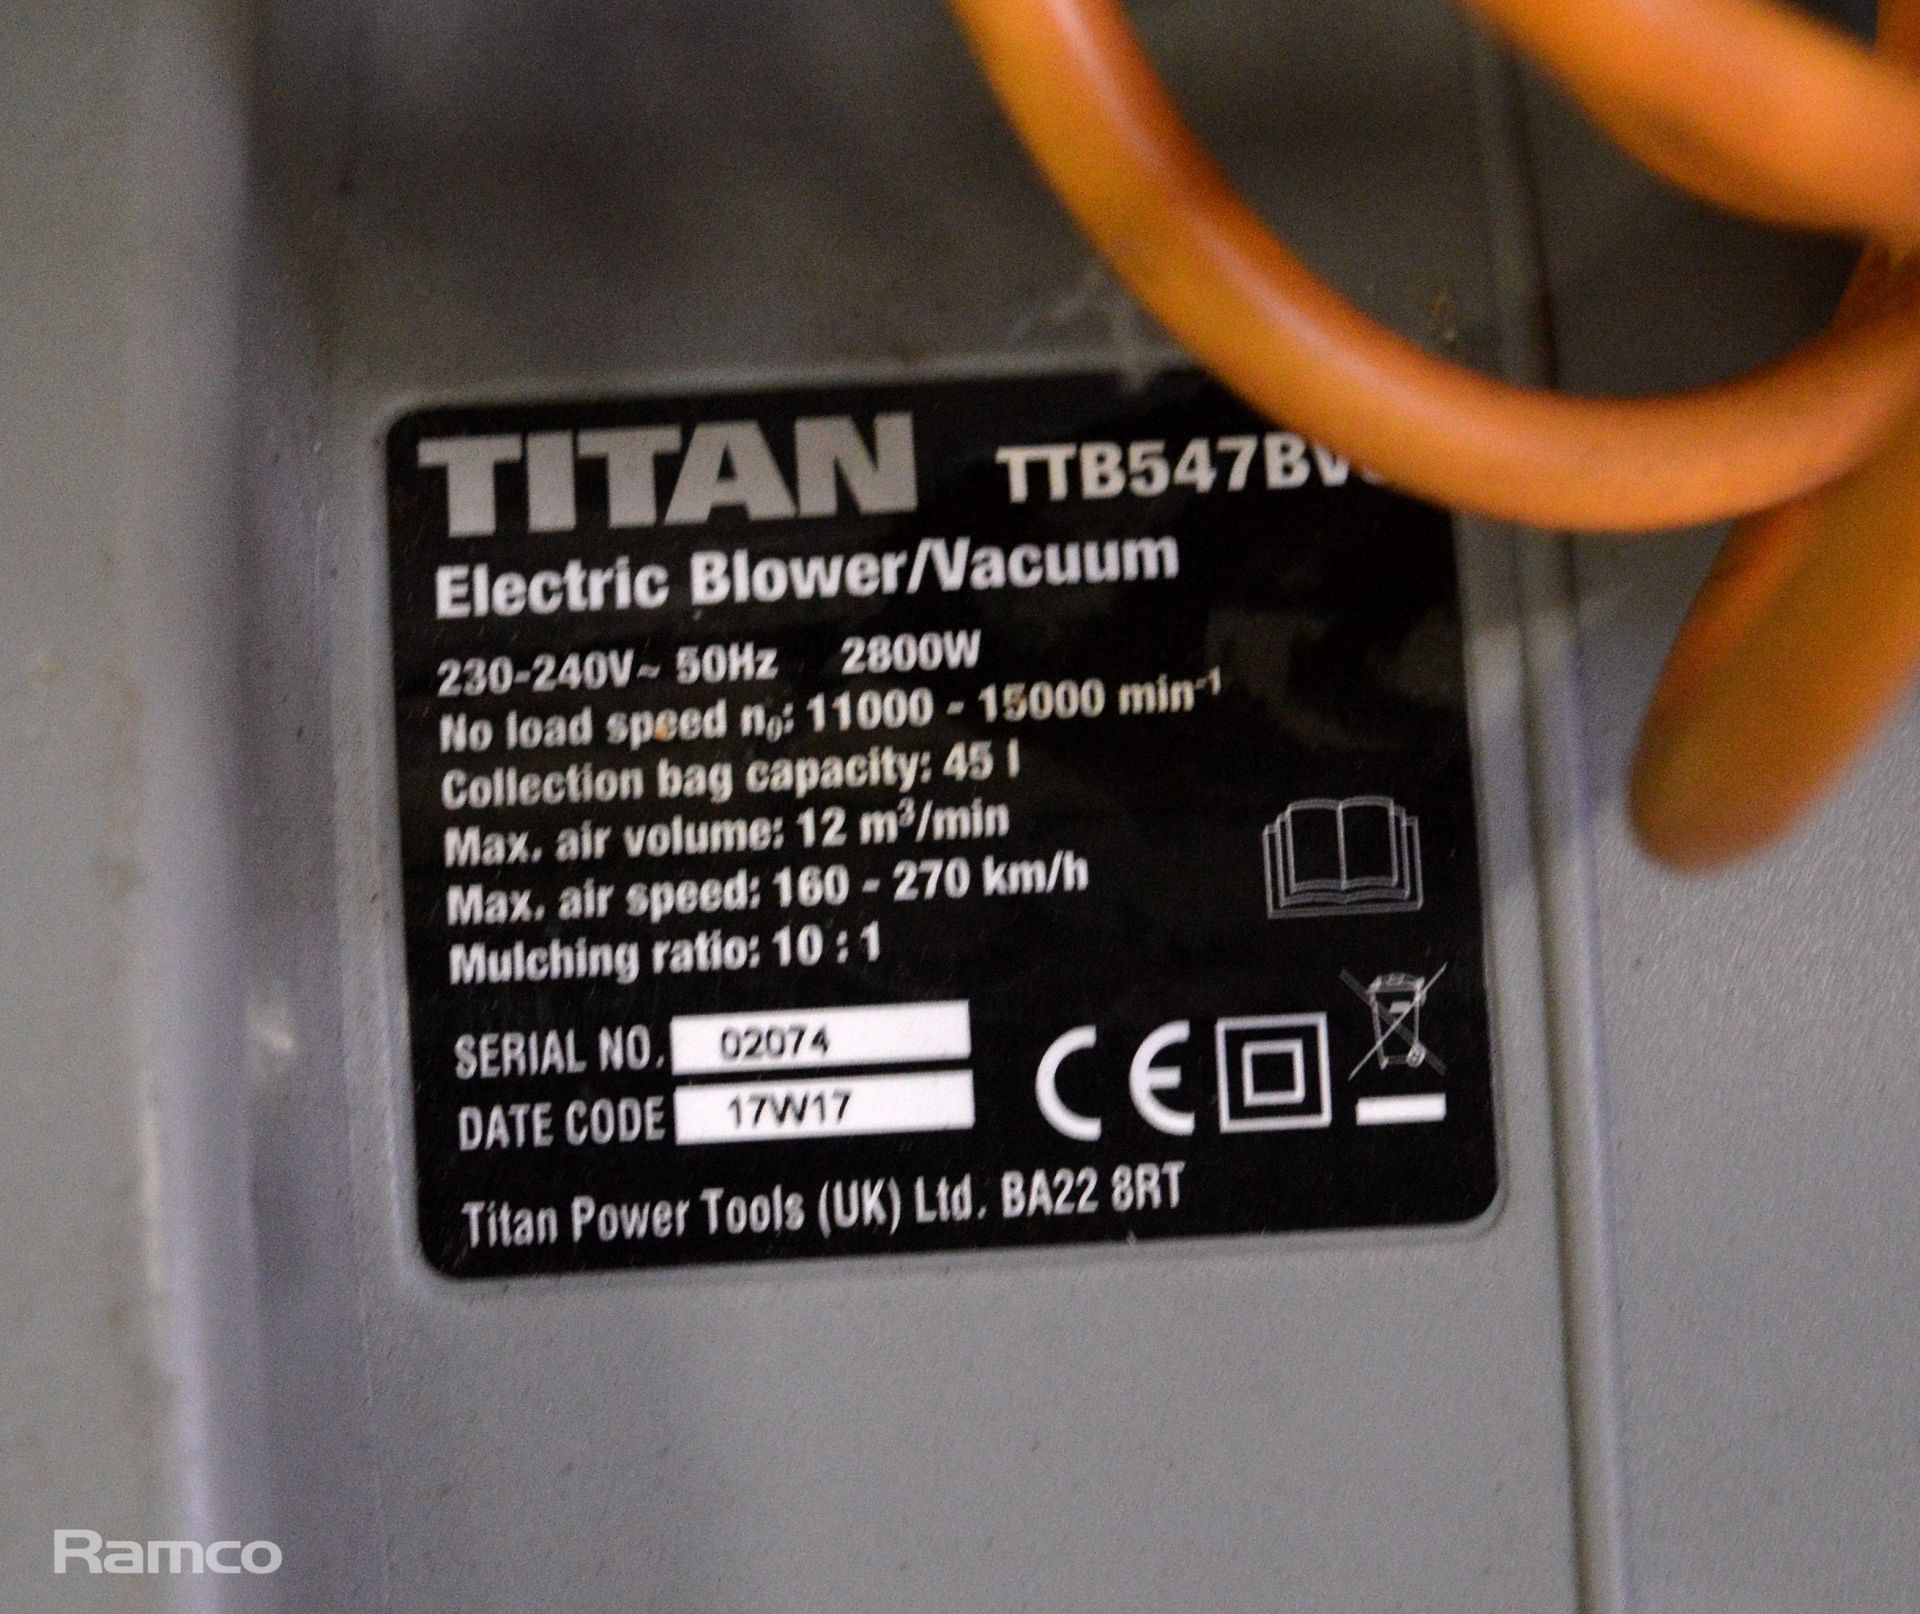 Titan TTB547BVC Leaf Blower/Vacuum - Image 3 of 4